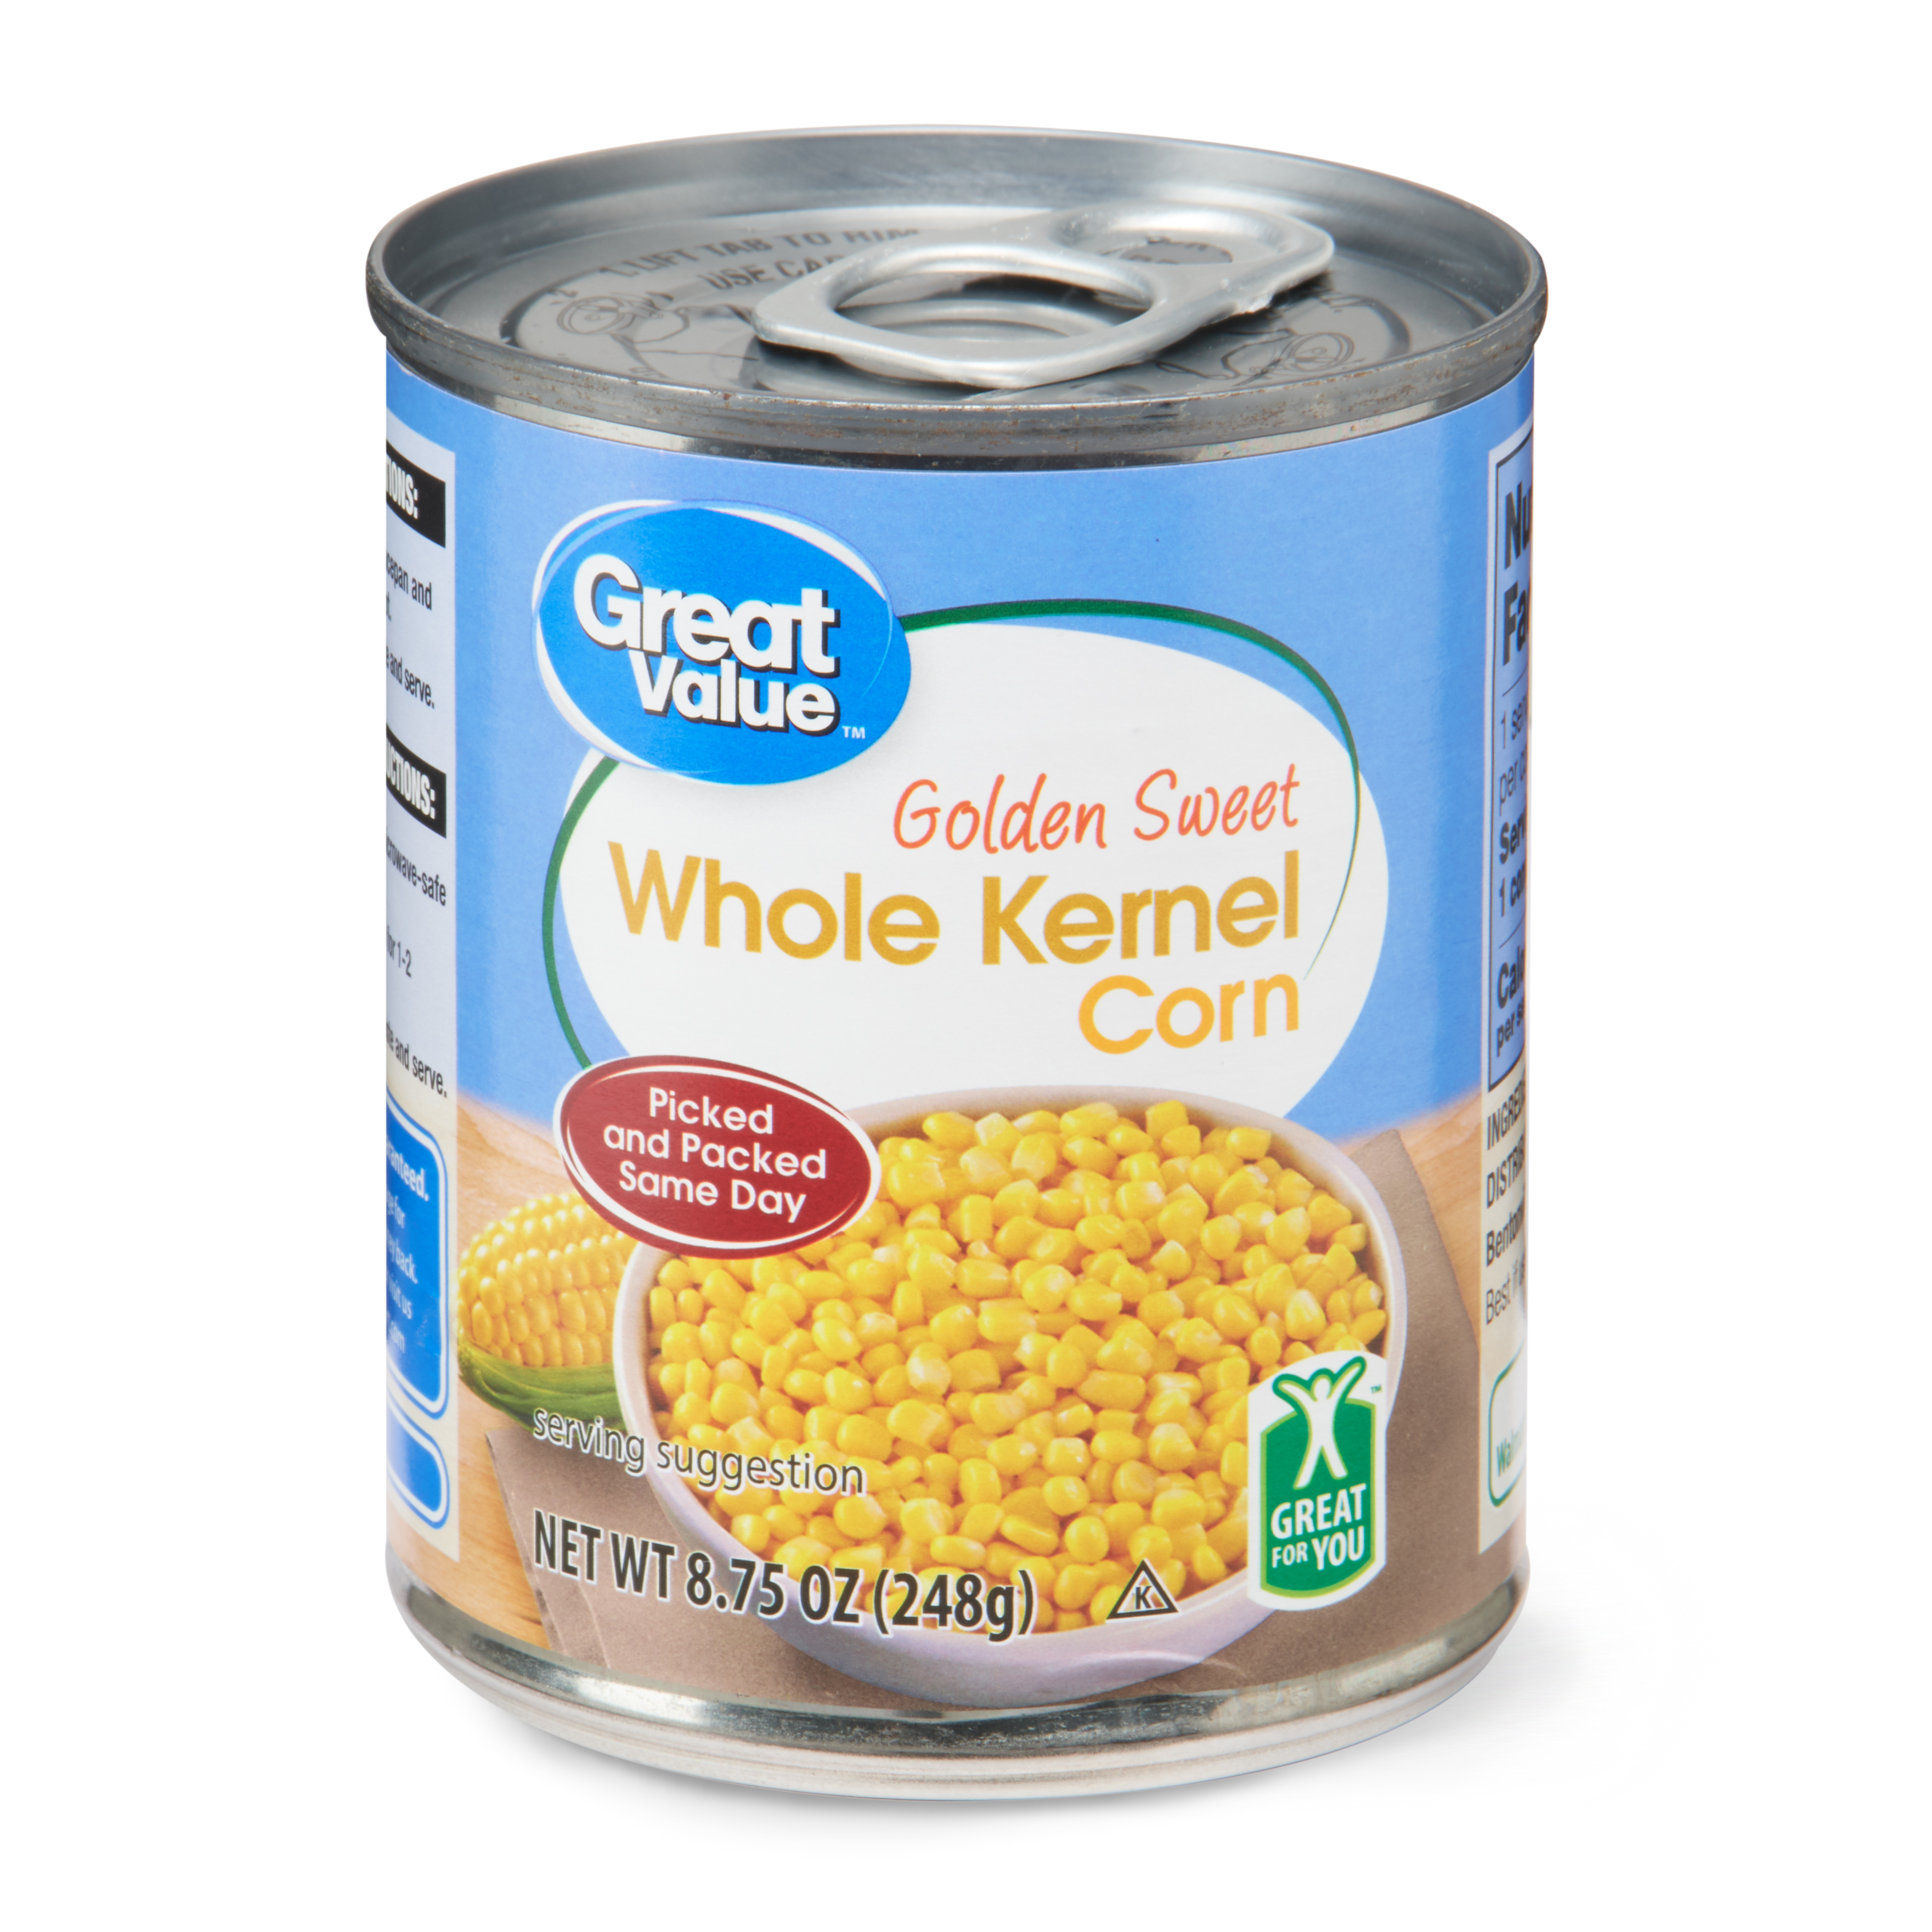 Whole Kernel Corn Image